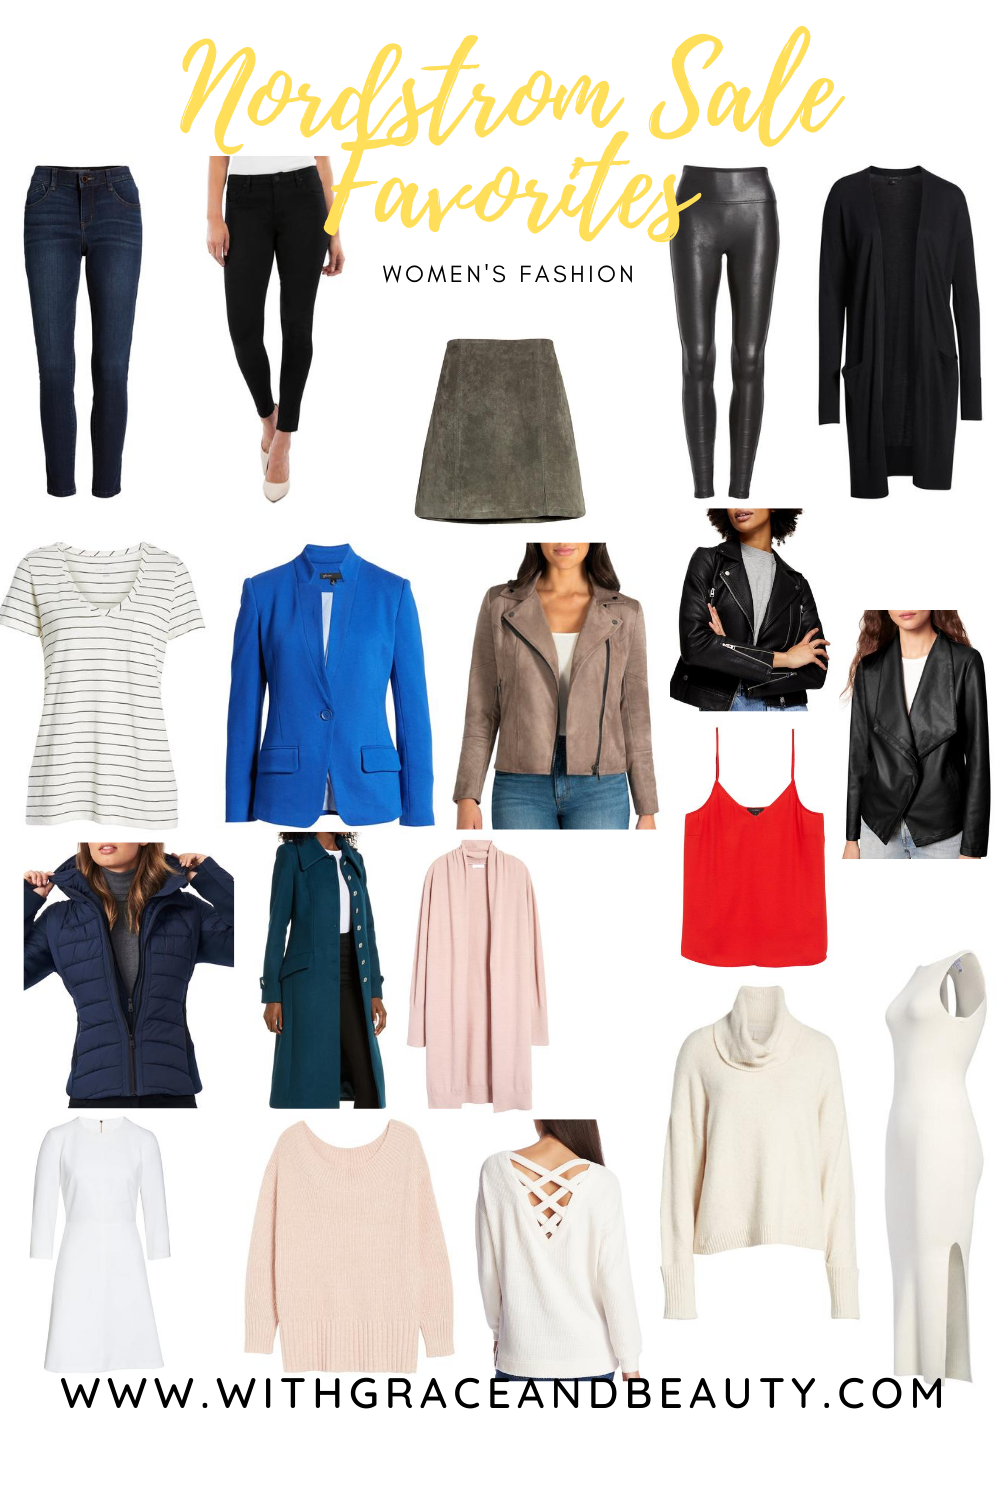 Nordstrom Sale Favorites - Women's Fashion | www.withgraceandbeauty.com